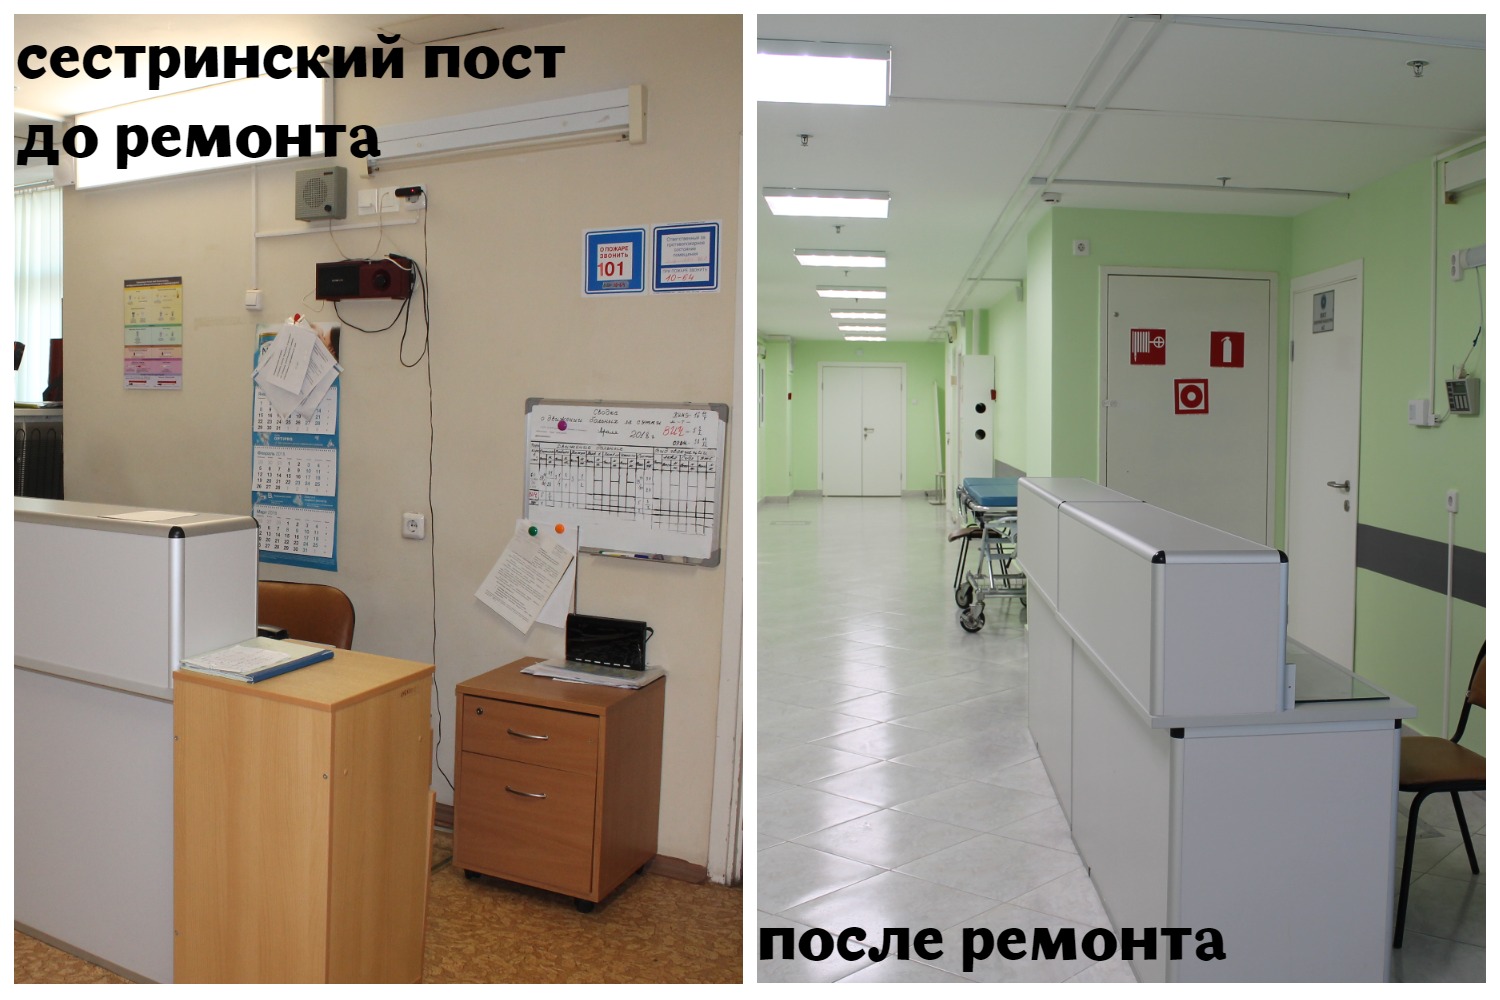 Кропоткина инфекционная больница